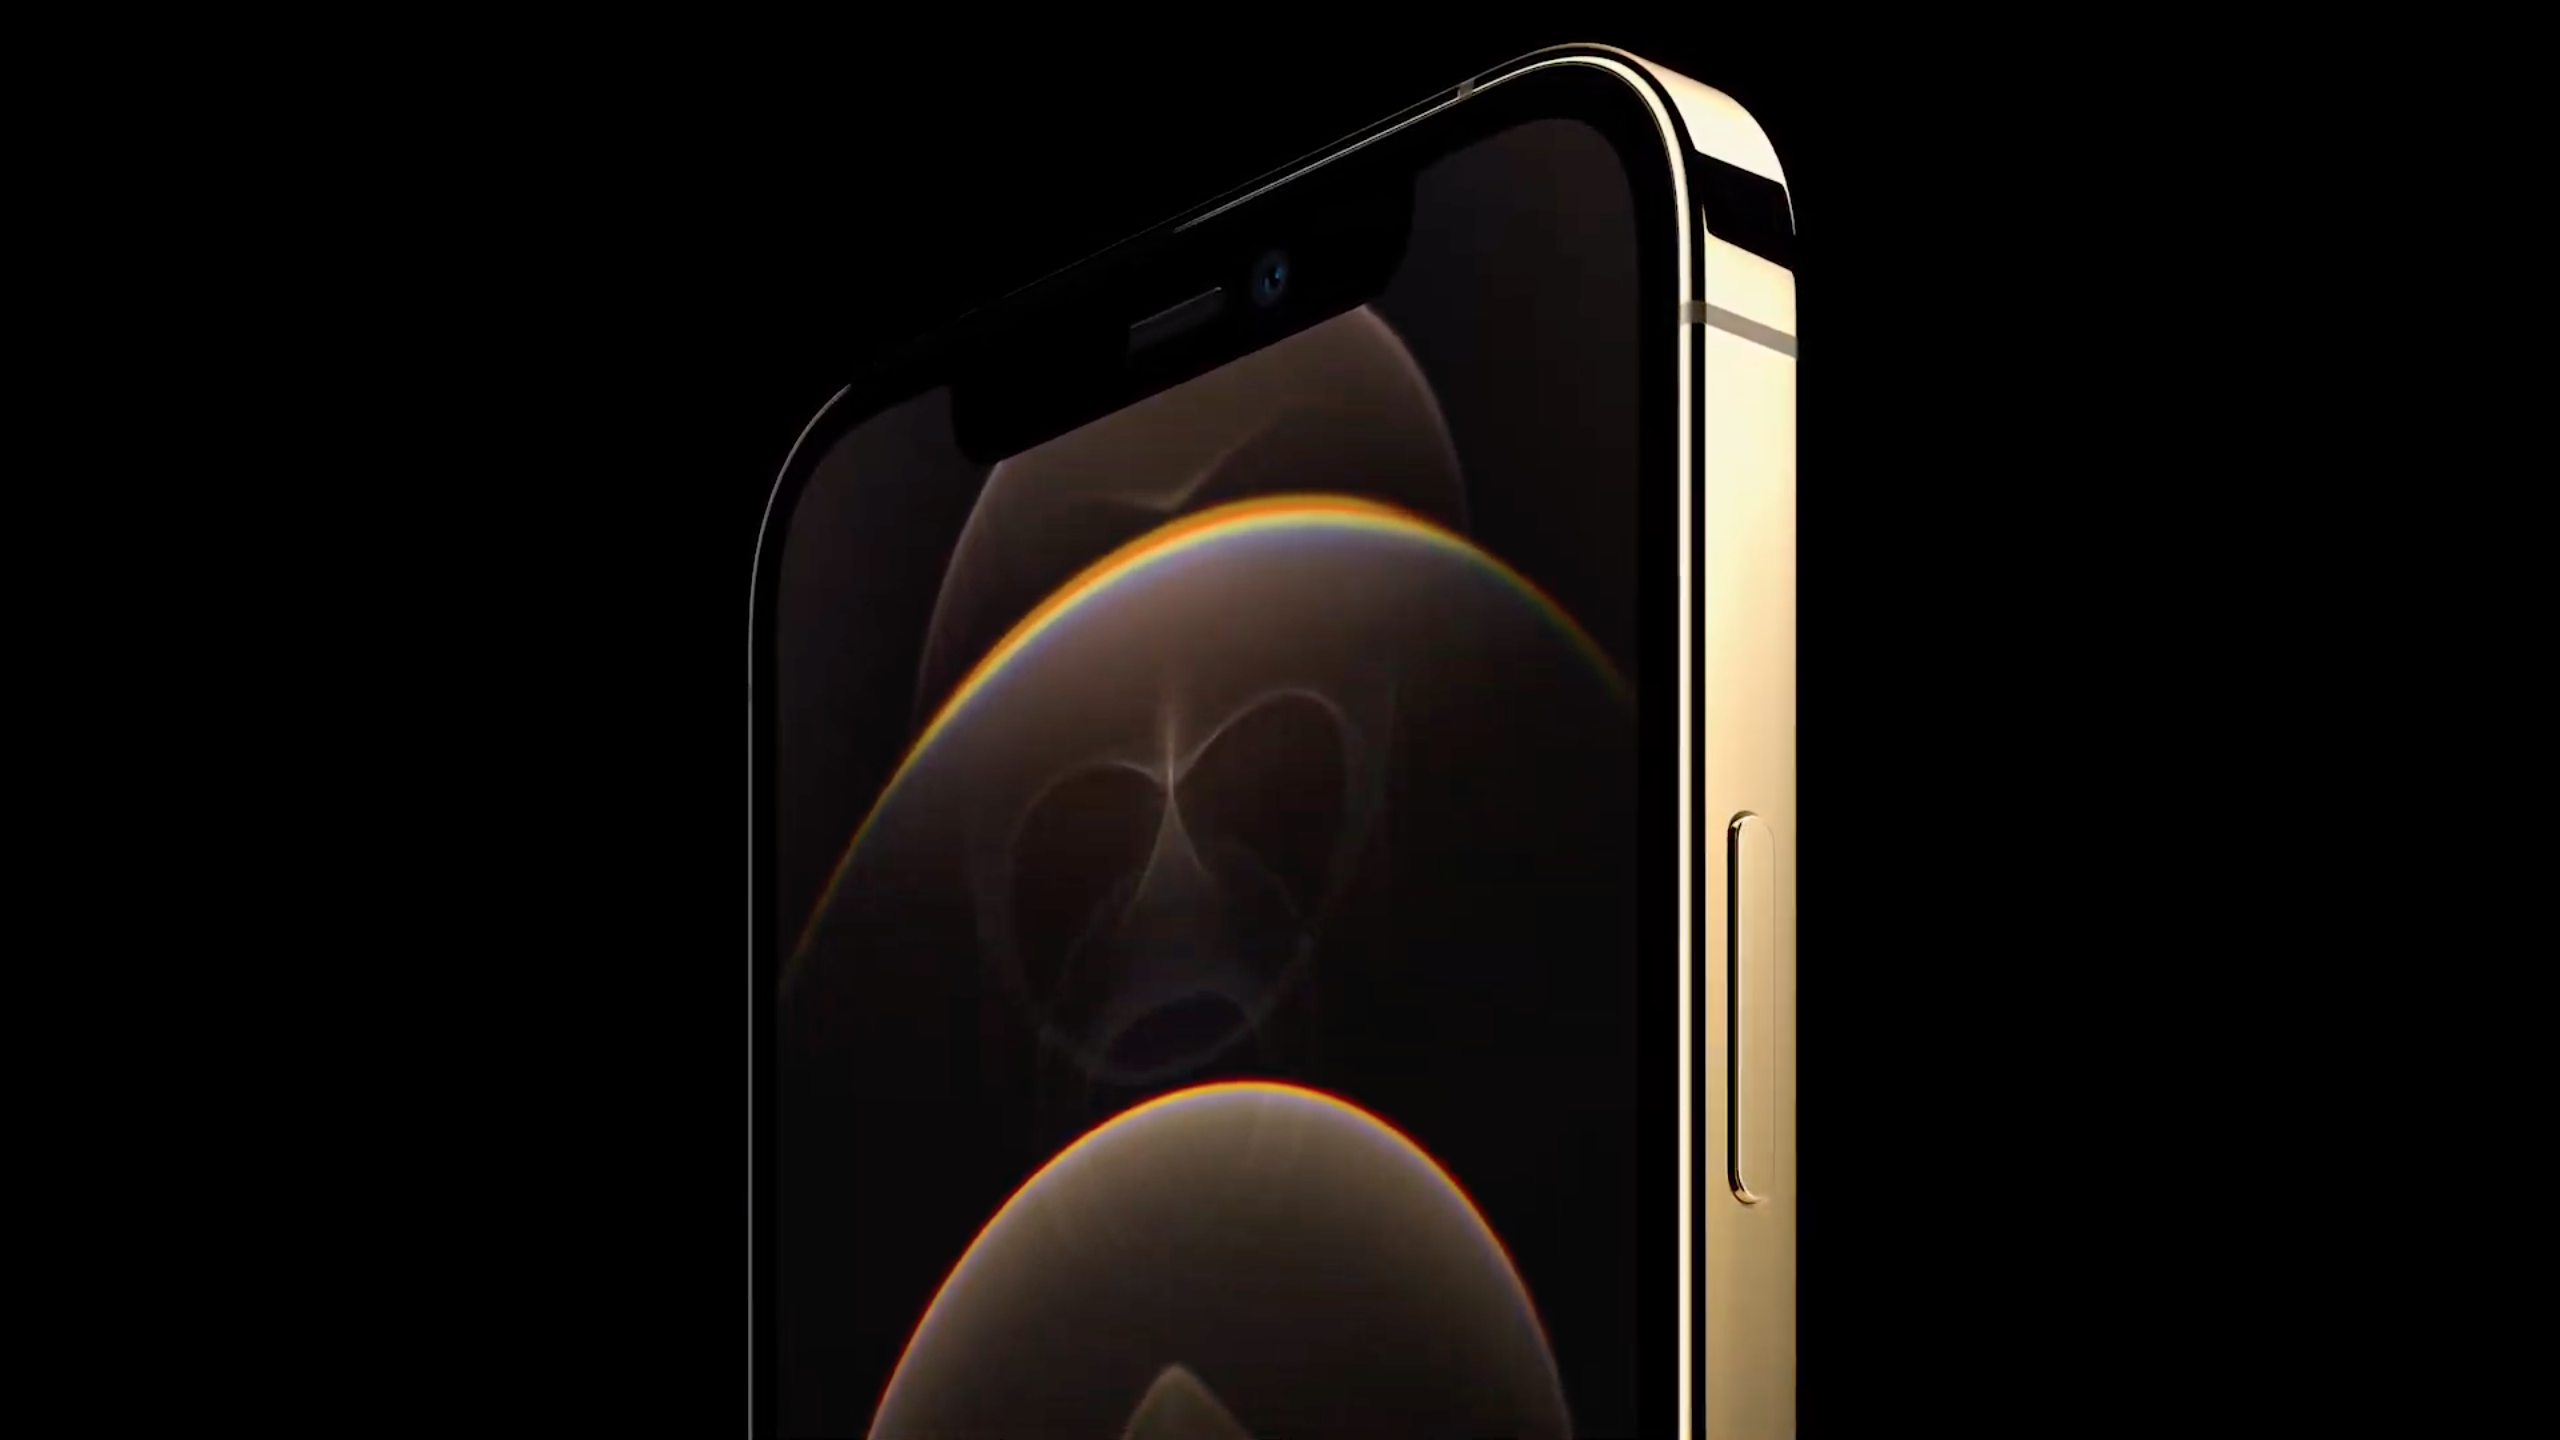 iPhone 12 Pro Max và cập nhật mới: Bạn muốn được cập nhật những tính năng mới và độc đáo cho chiếc iPhone 12 Pro Max của mình? Hãy cập nhật ngay để trải nghiệm những điều bất ngờ và thú vị nhất từ Apple! Đừng bỏ lỡ cơ hội để đắm chìm vào thế giới công nghệ đầy sáng tạo và tiện ích.